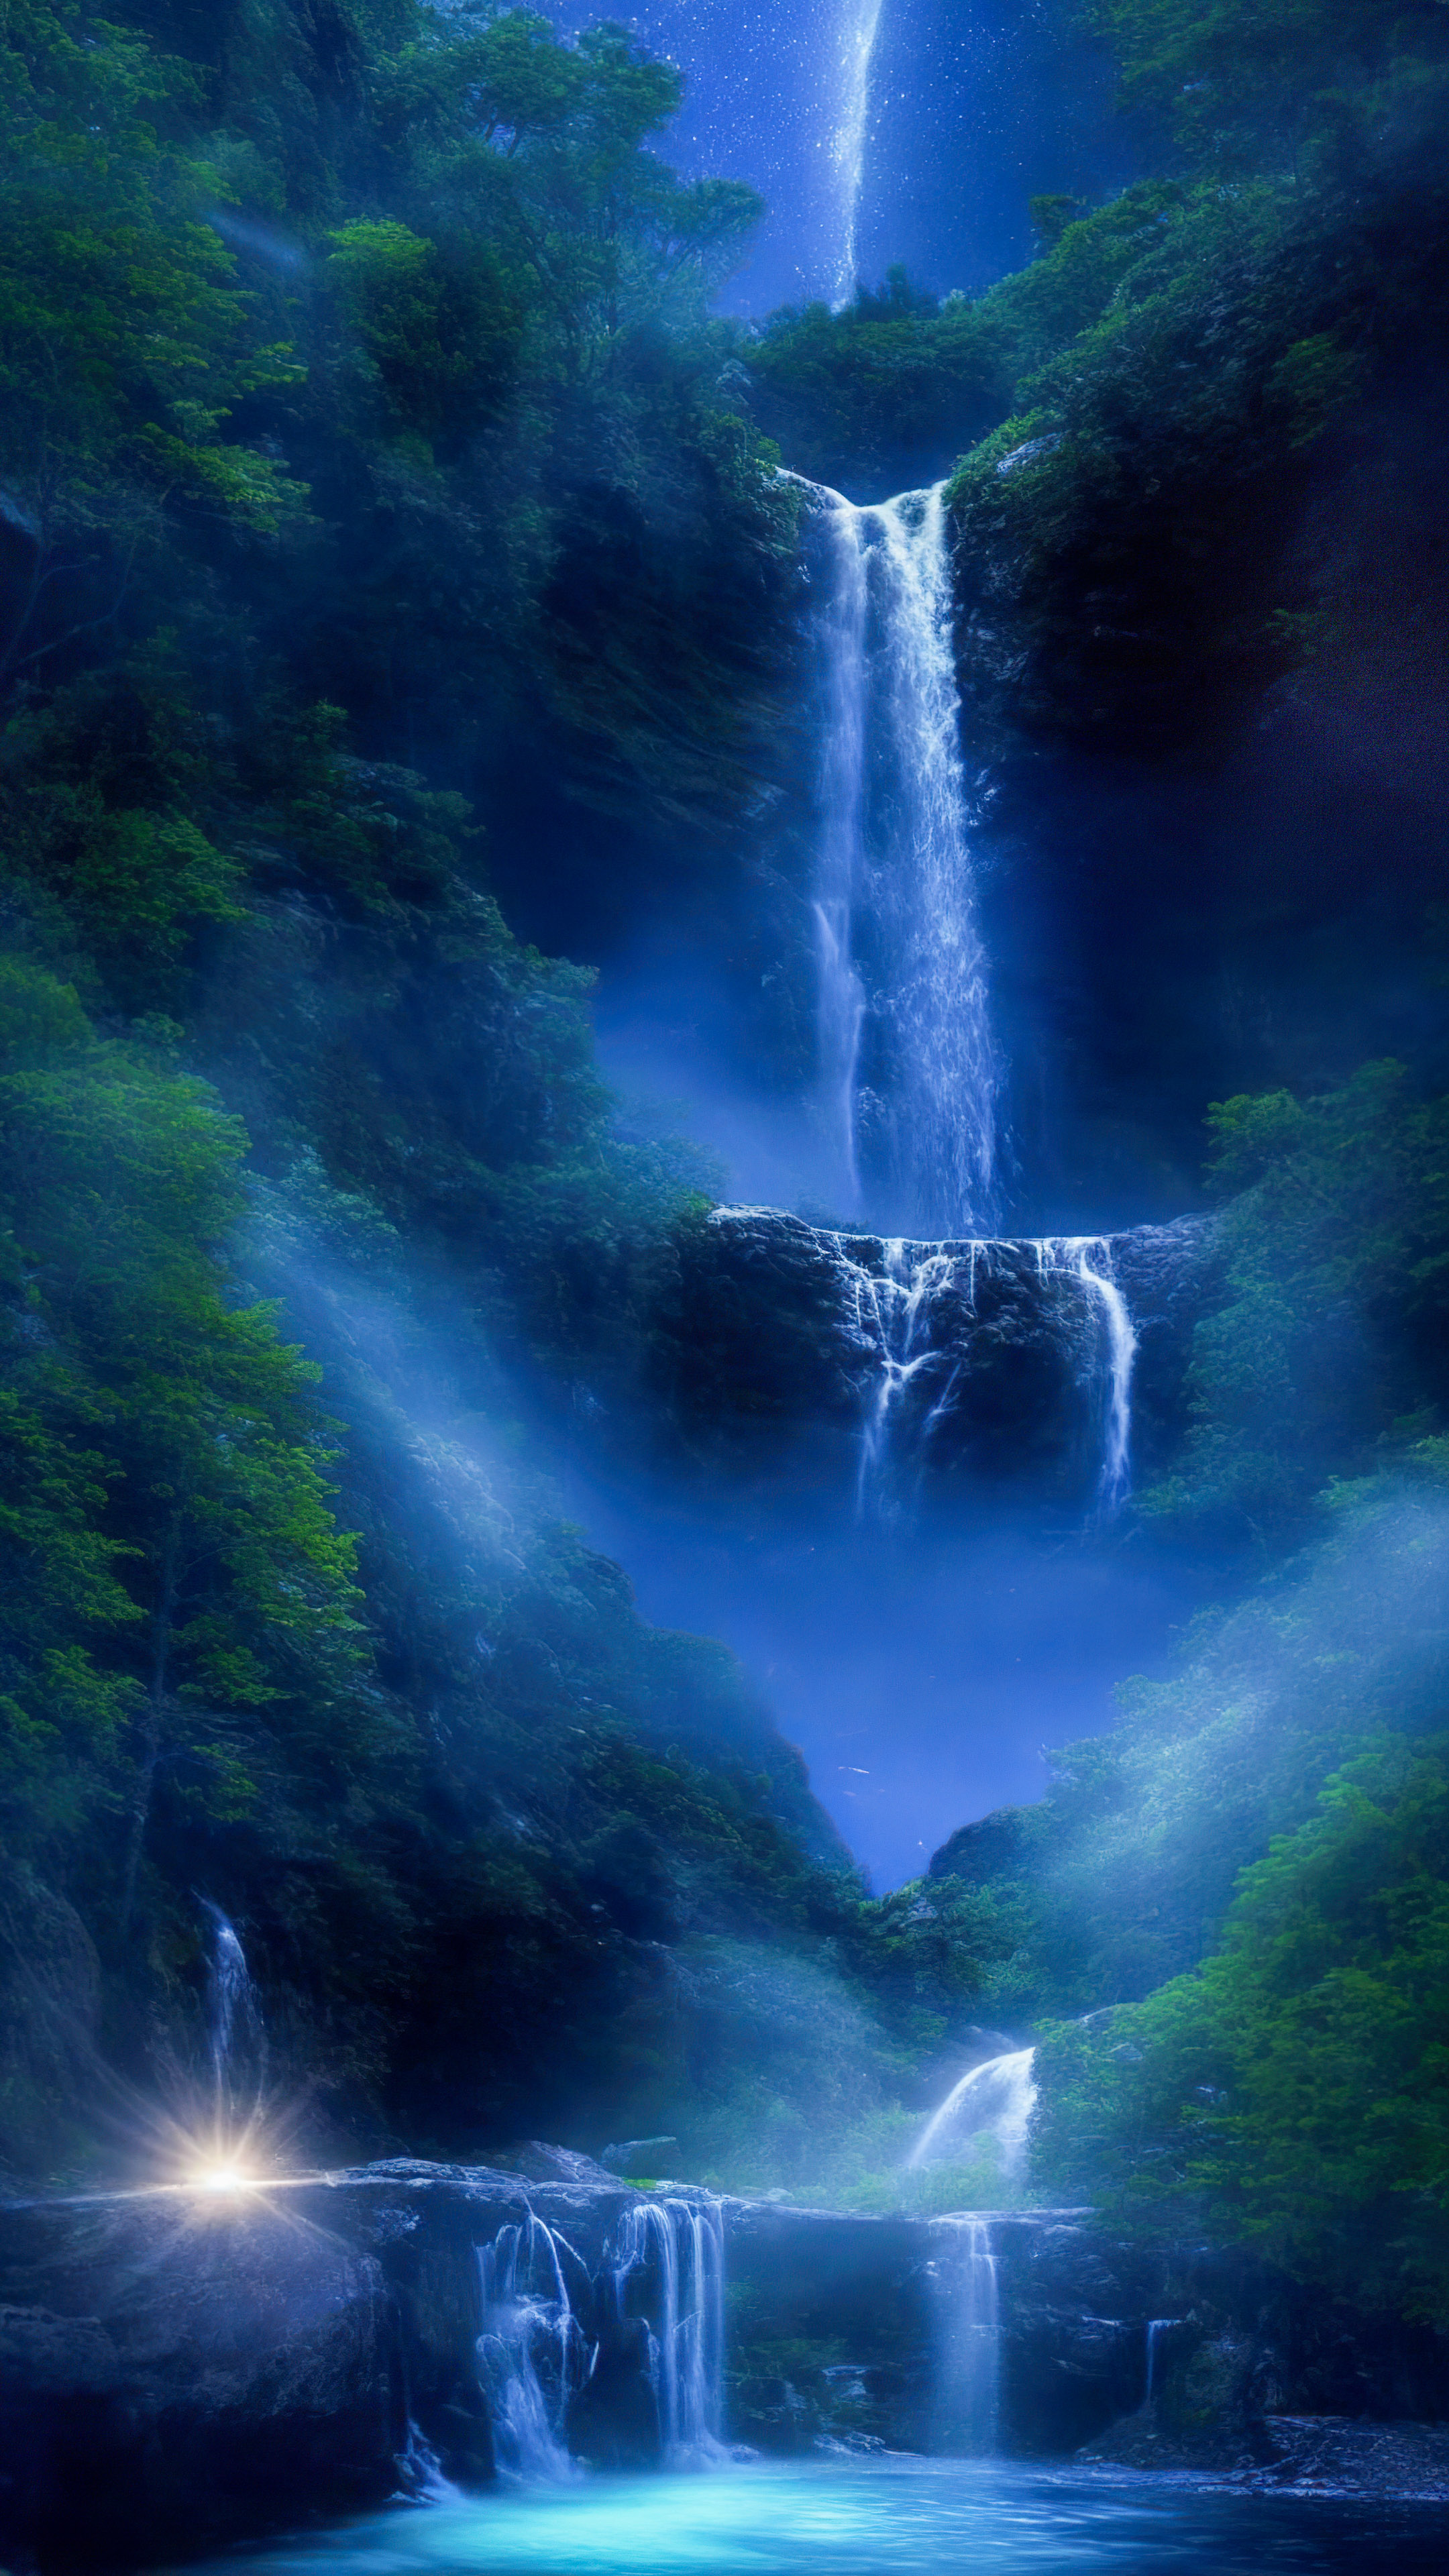 Immergez-vous dans l'enchantement de notre fond d'écran nature en HD, présentant une cascade magique illuminée par le clair de lune, avec des lucioles dansant autour de ses eaux en cascade.